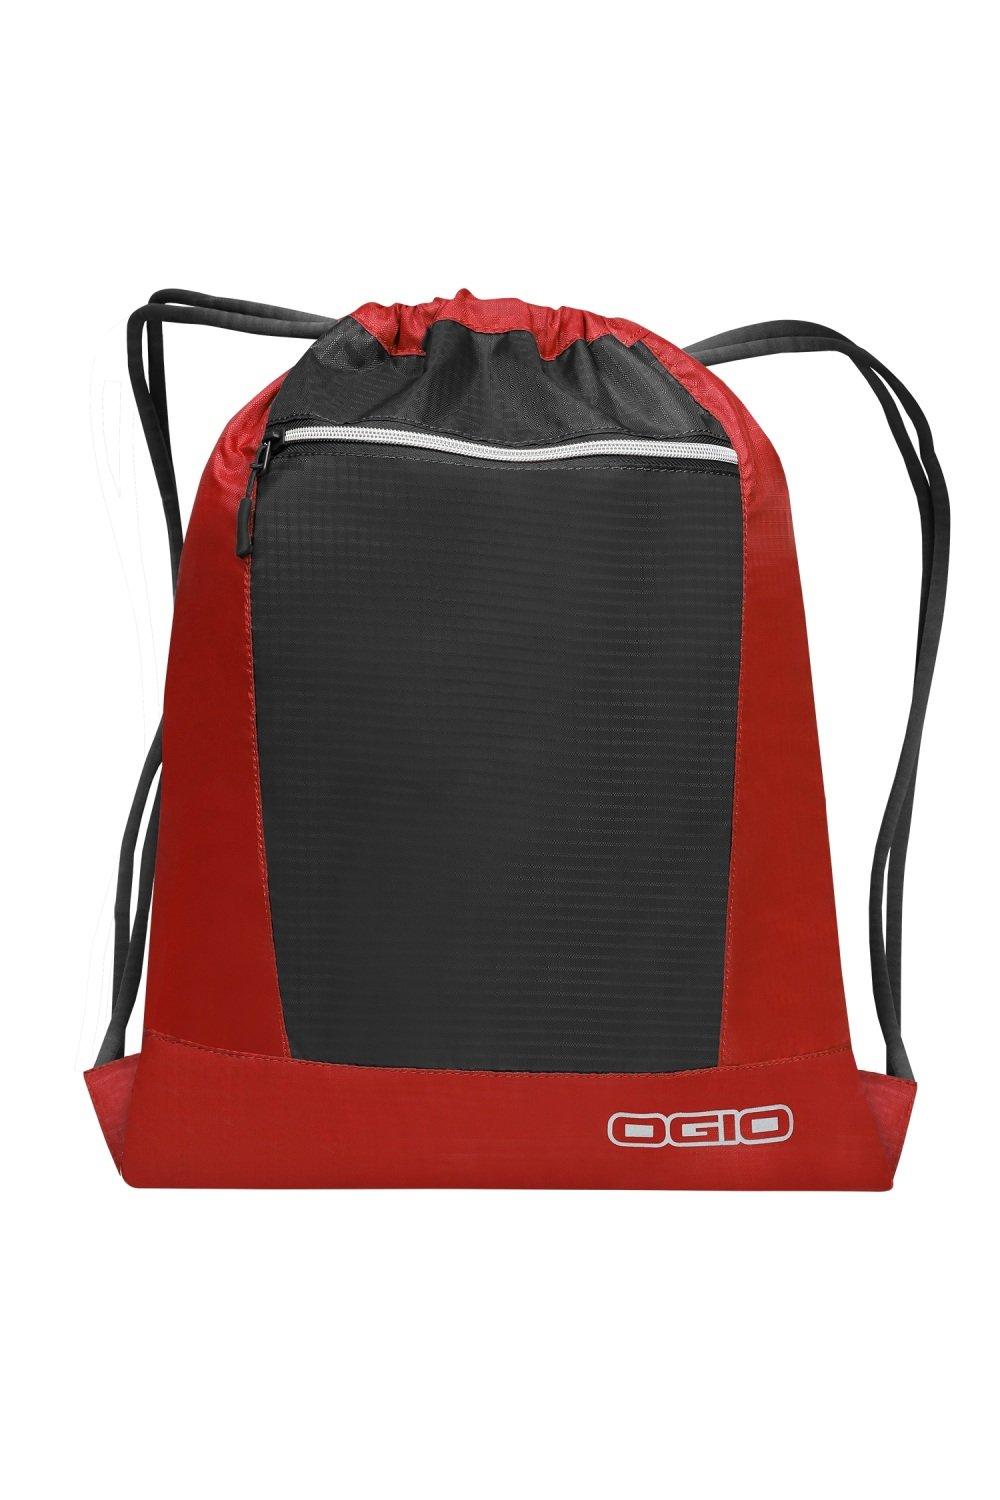 Сумка Endurance Pulse на шнурке Ogio, красный сумка endurance pulse на шнурке ogio синий